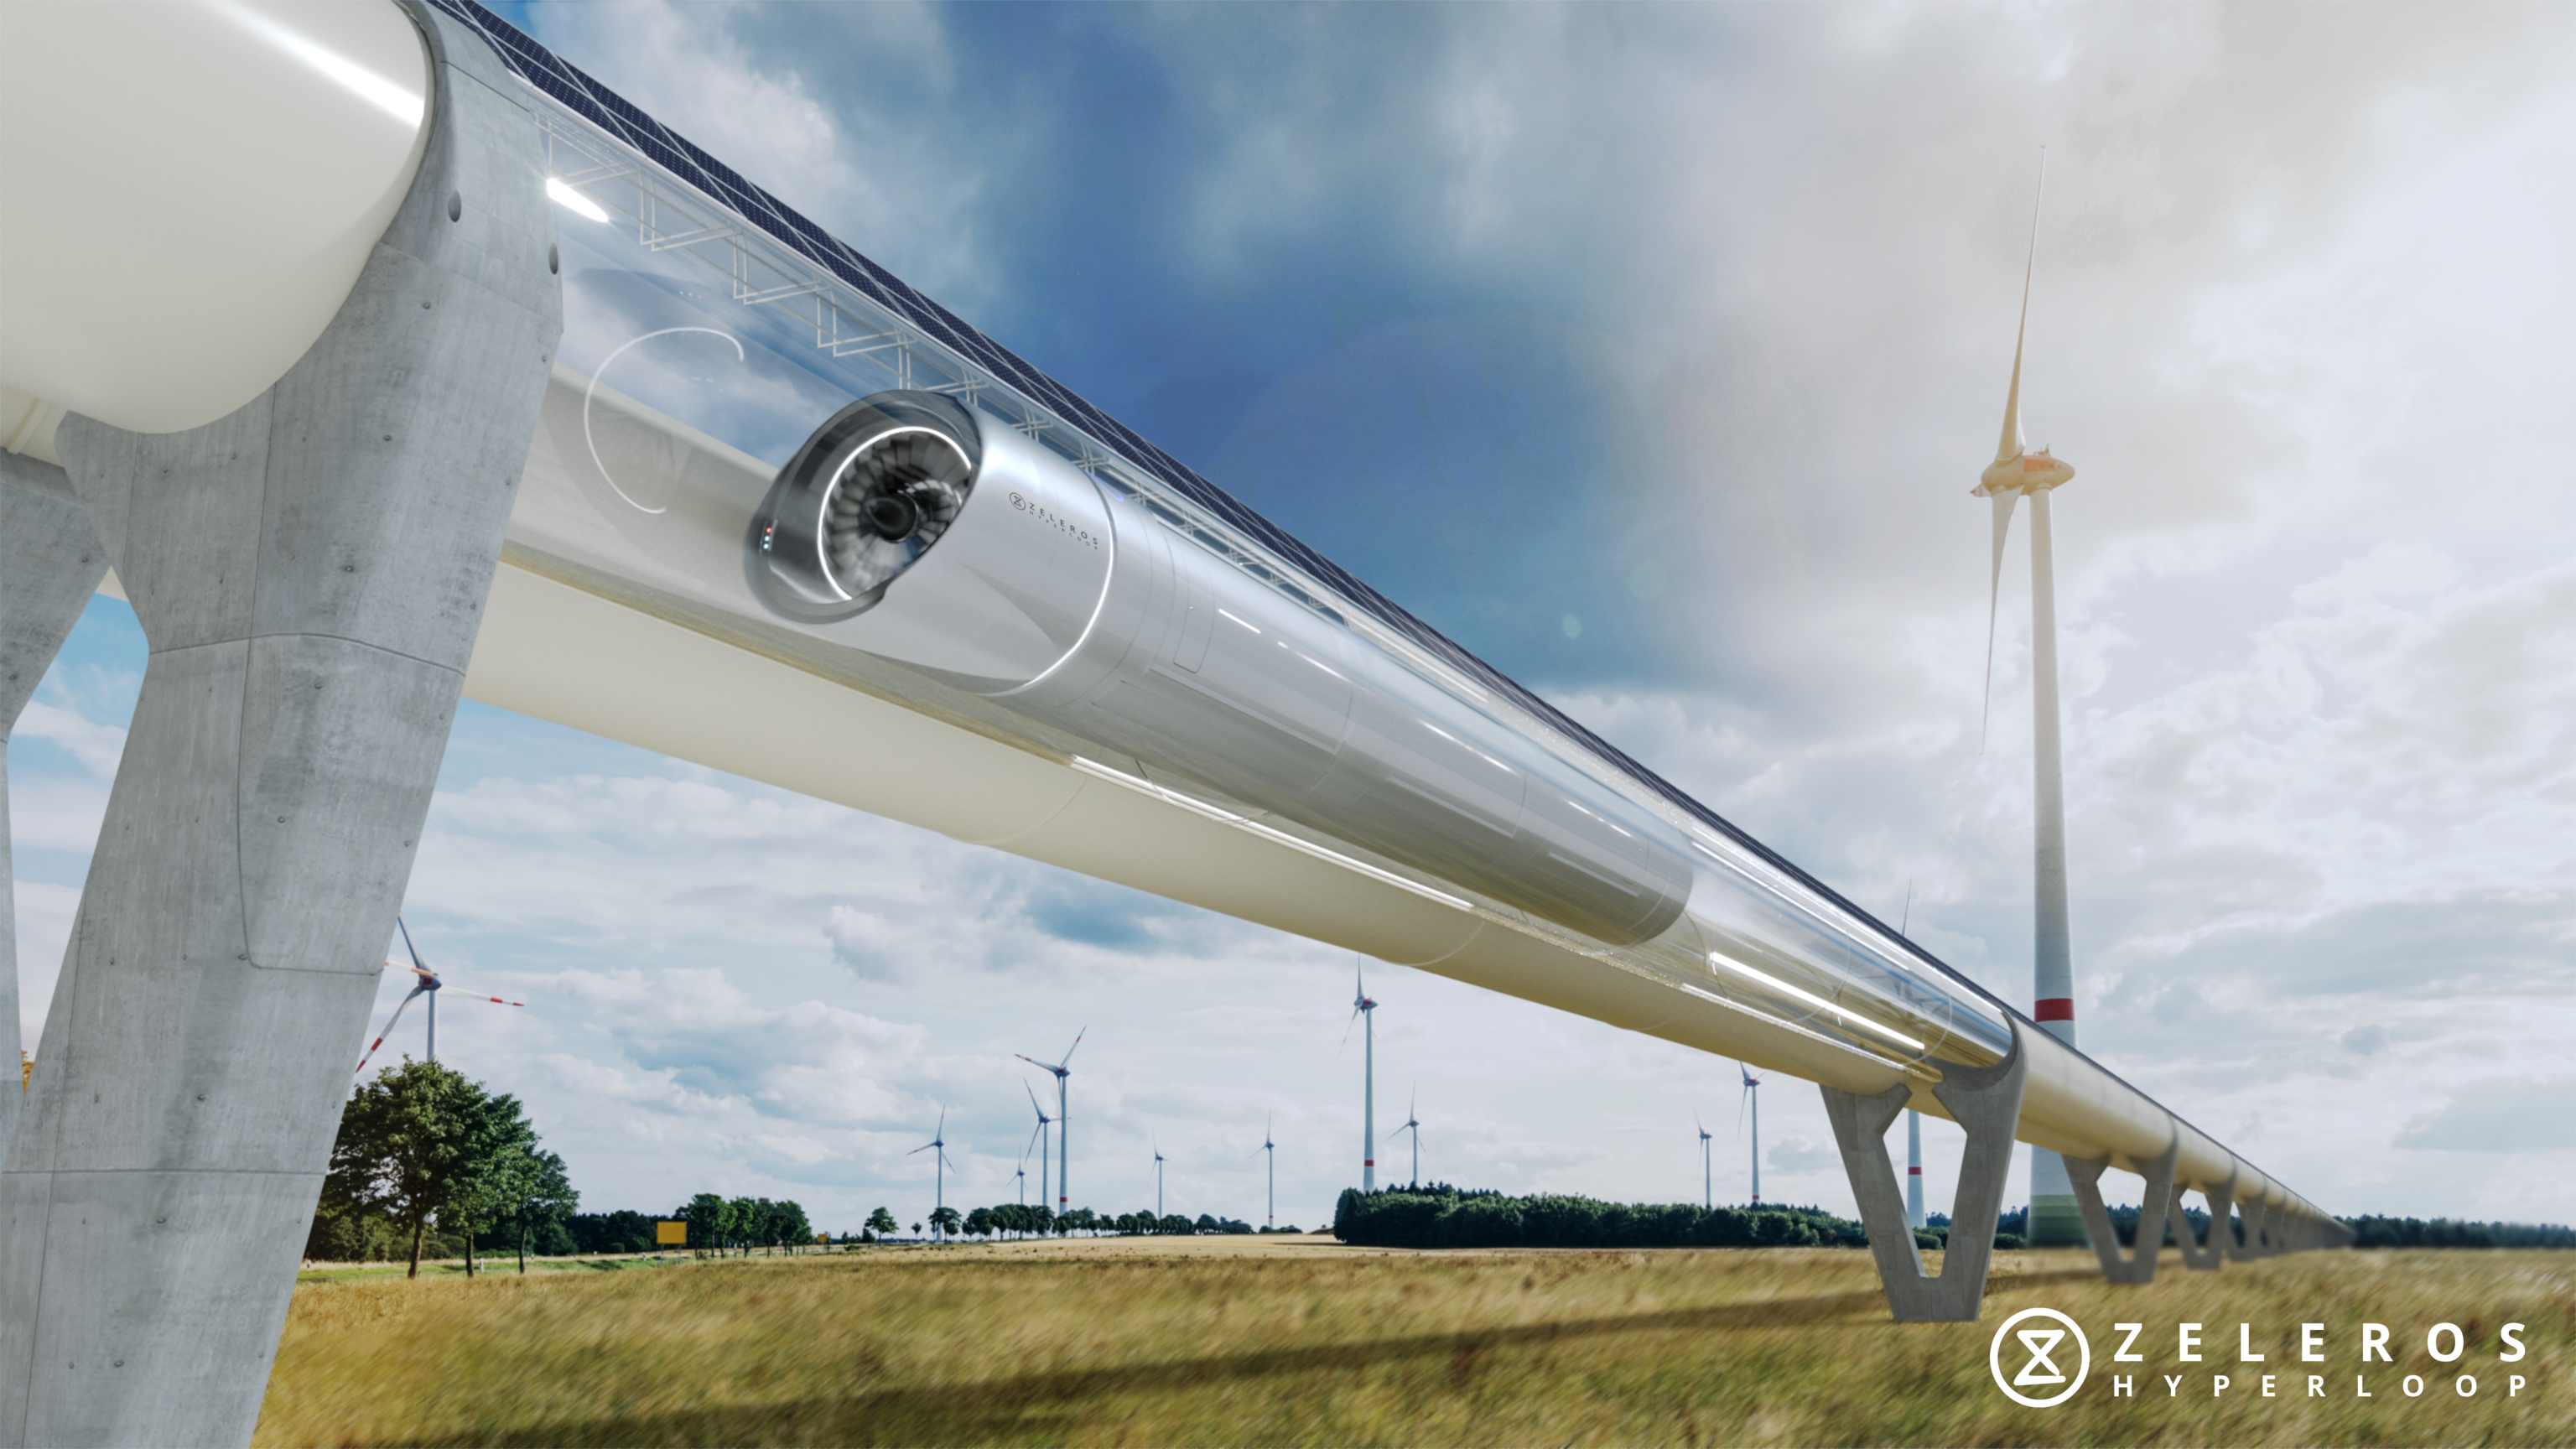 Recreación de la tecnología 'hyperloop' realizada por Zeleros.